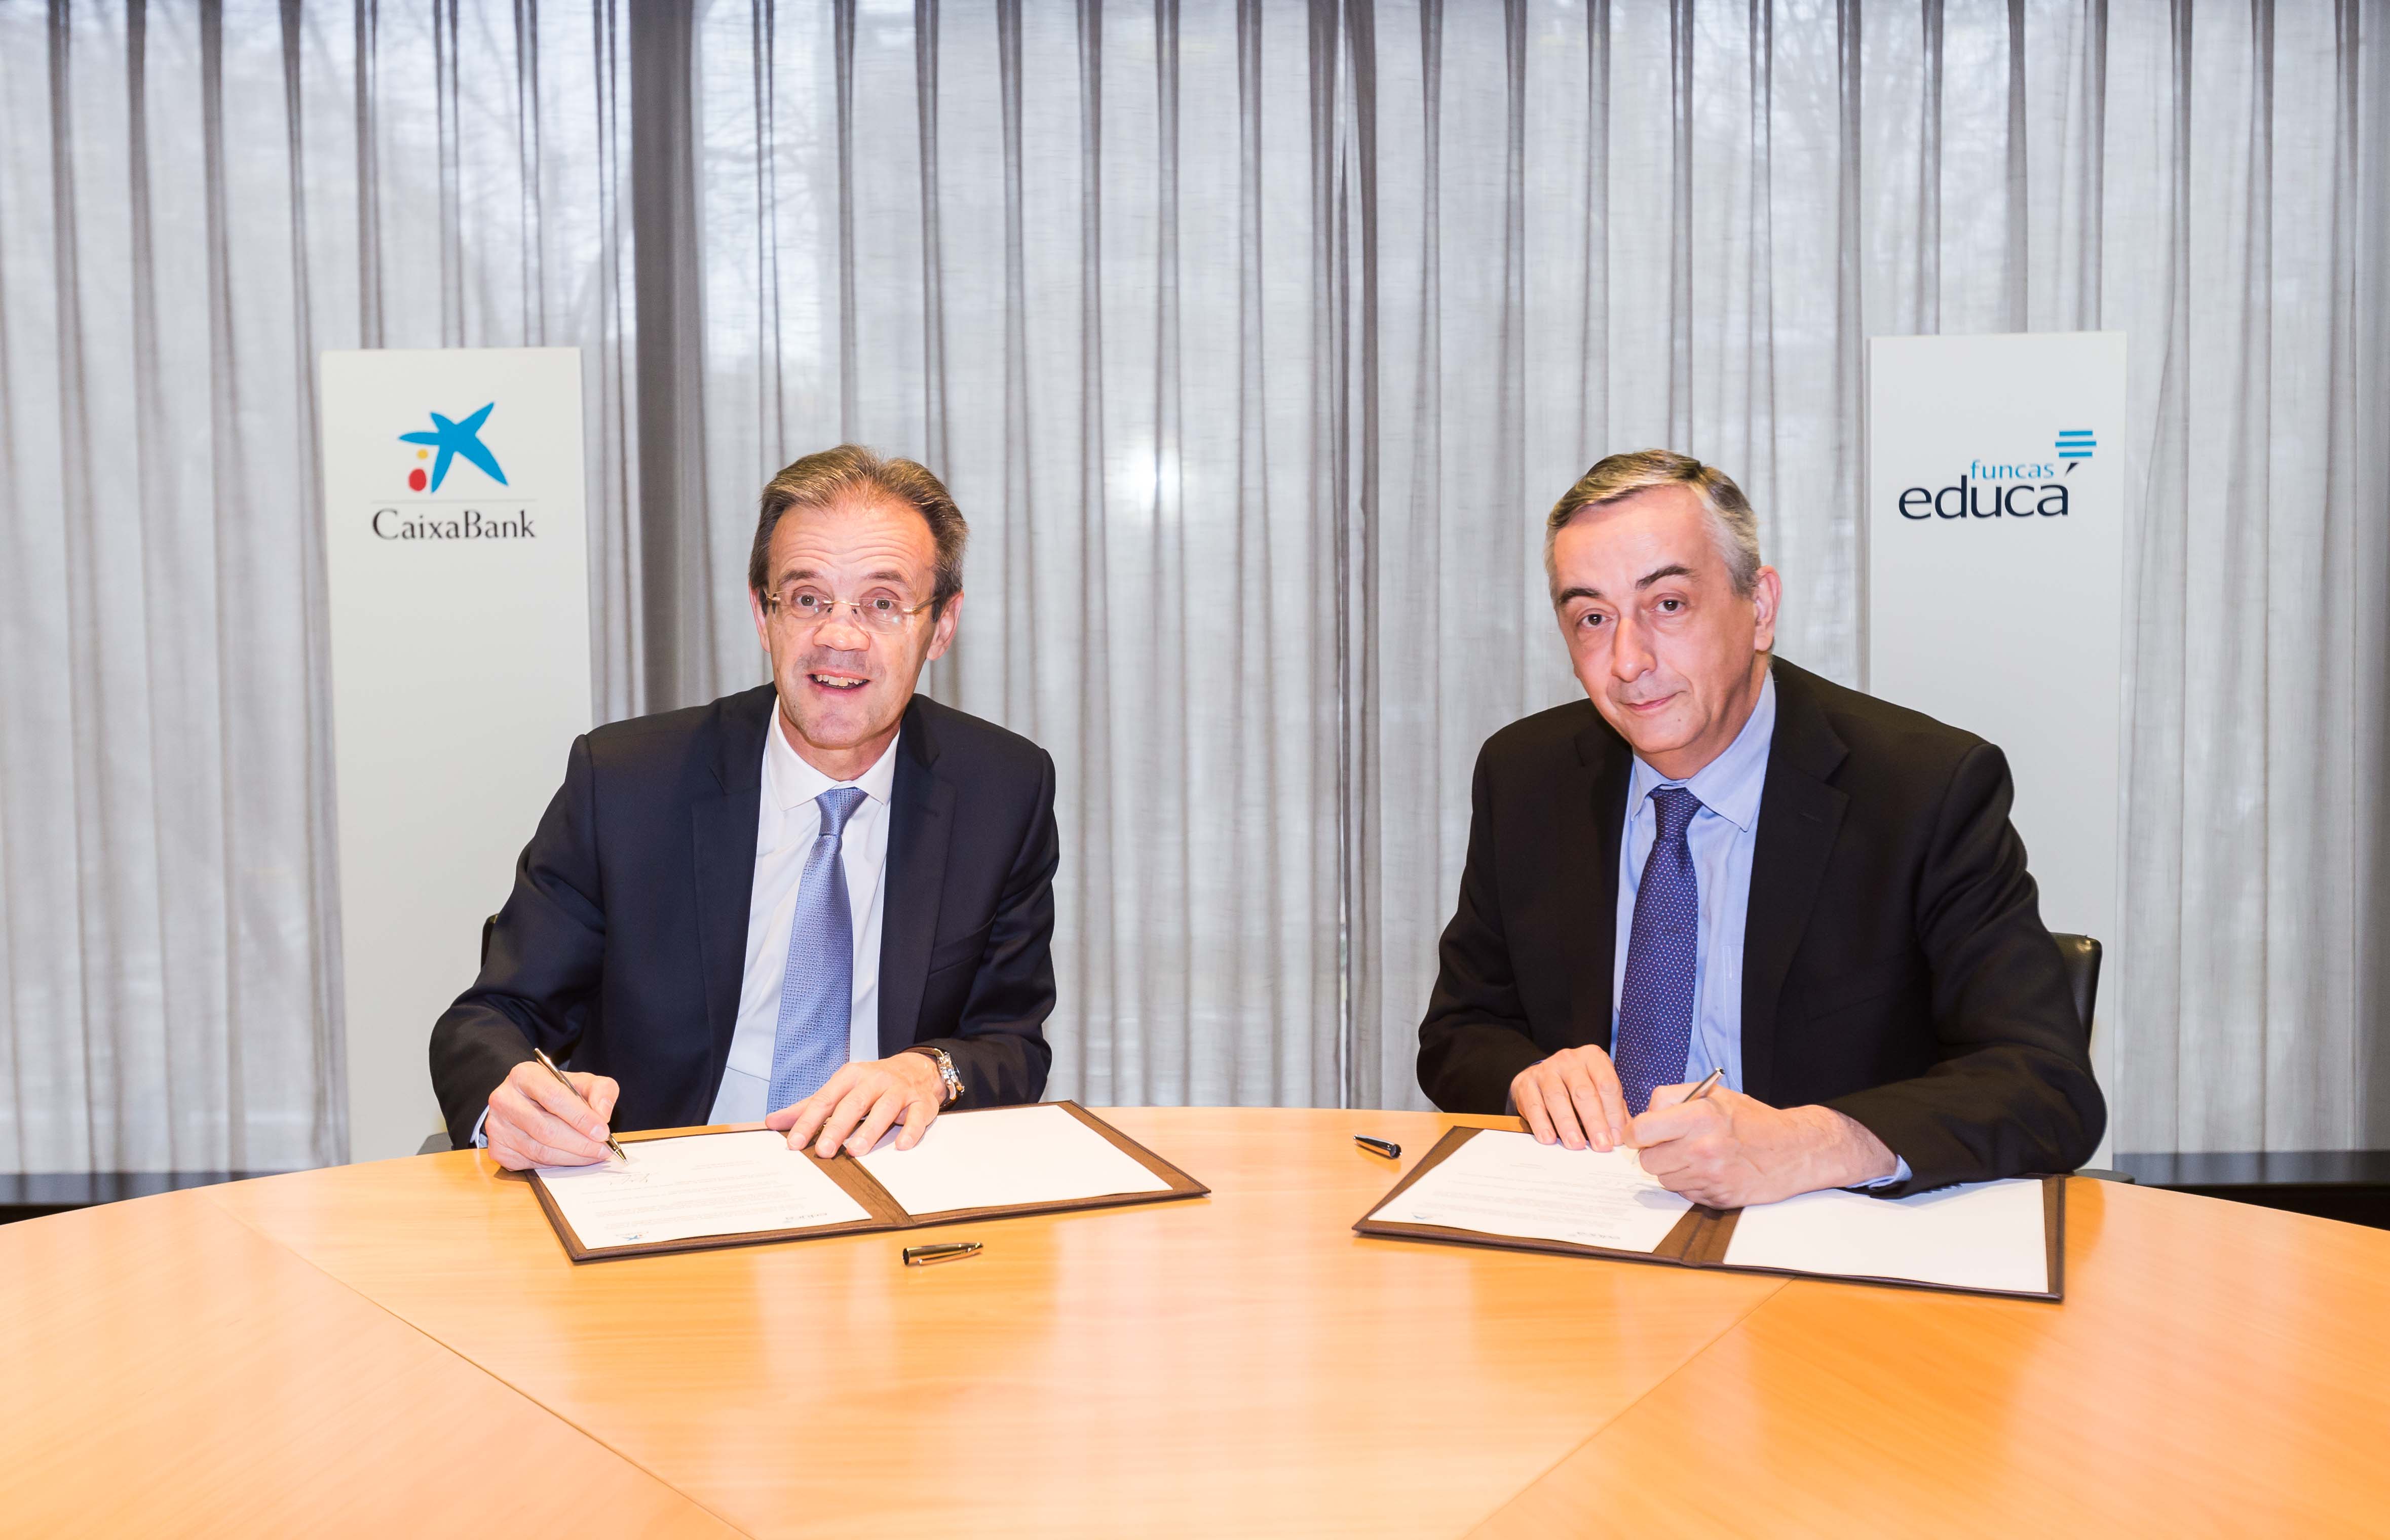 CaixaBank s'uneix al programa de Funcas per promoure l'educació financera